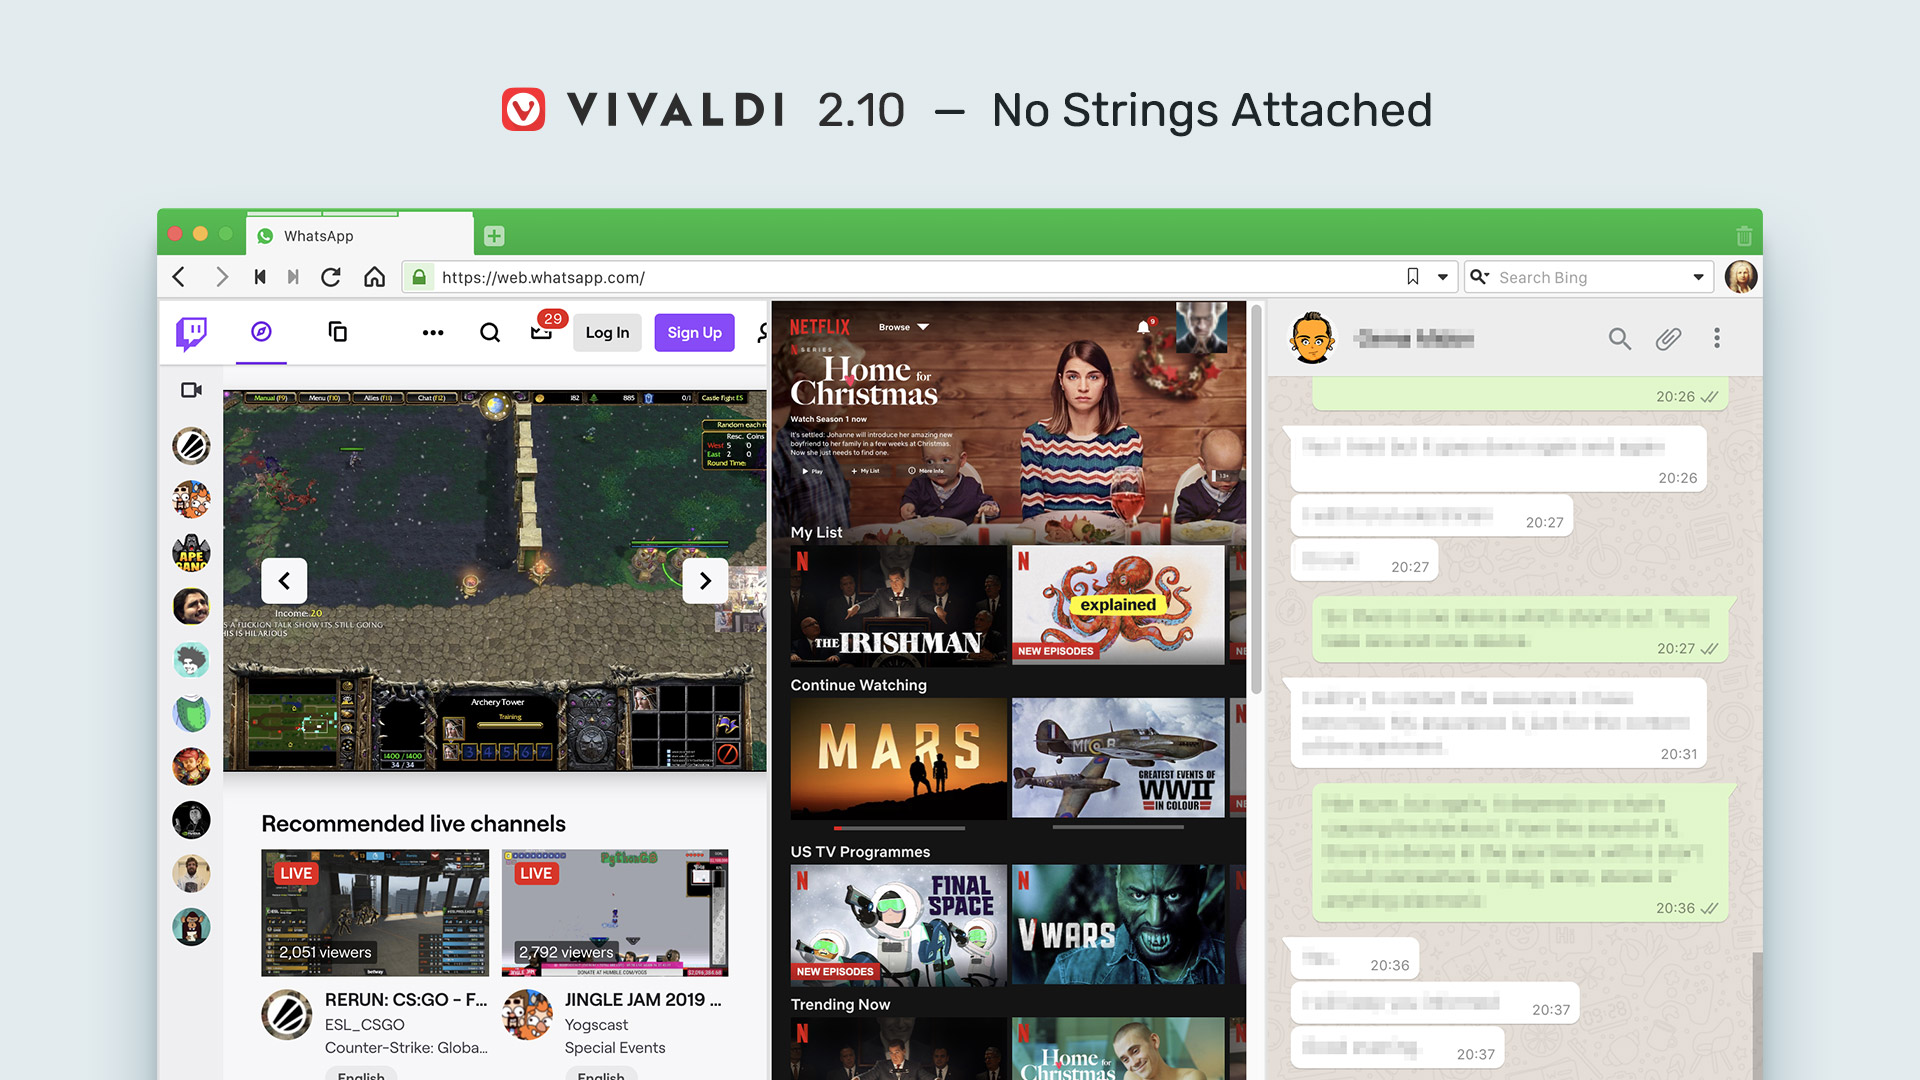 Vivaldi 2.10 - No strings attached